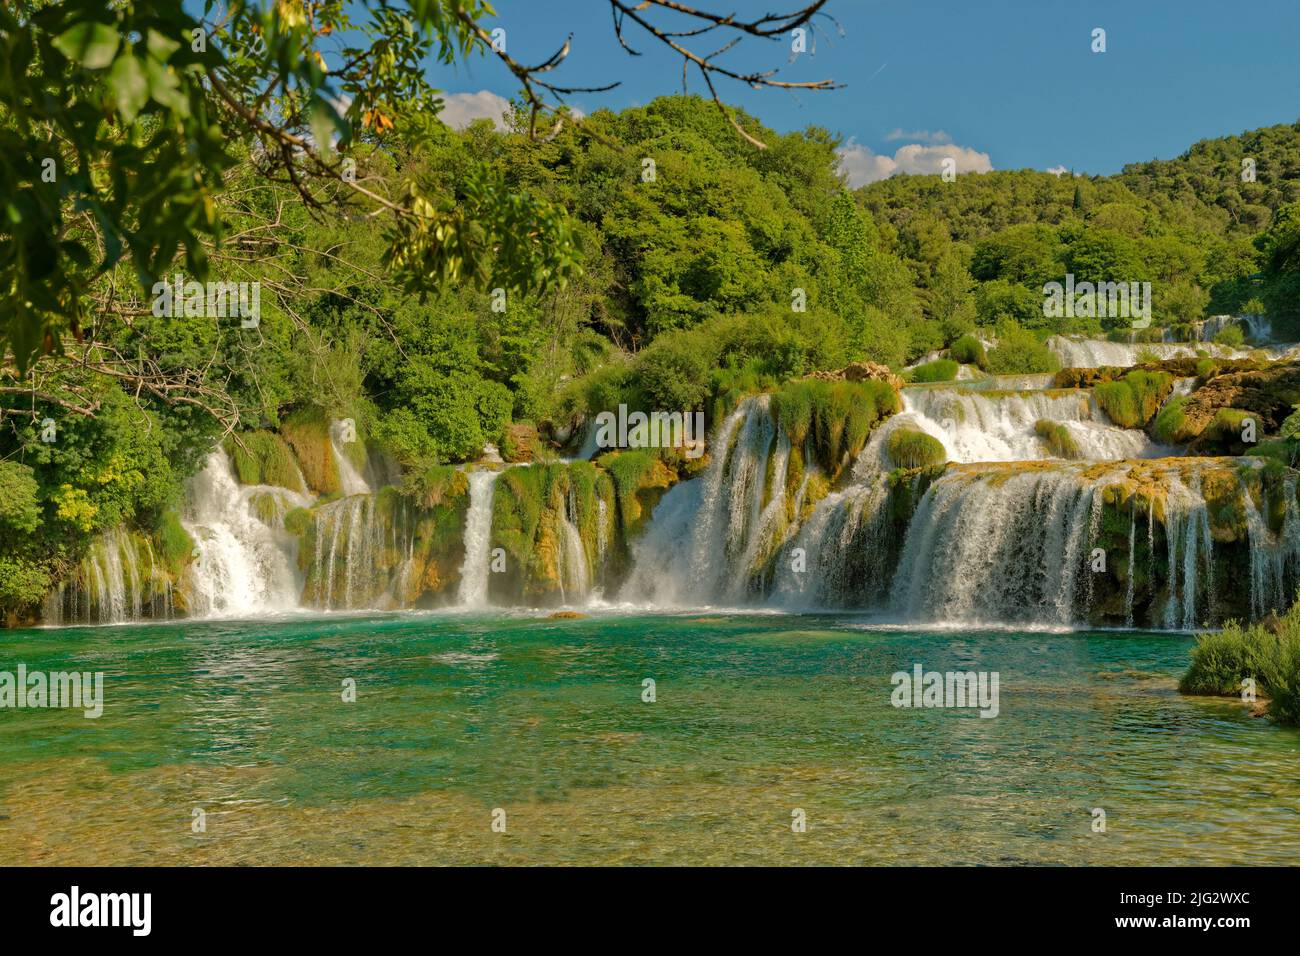 Les chutes de Krka au-dessus de Skradin dans le parc national de Krka, Dalmatie centrale, Croatie. Récemment, les autorités du parc ont interdit la baignade dans les piscines des chutes. Banque D'Images